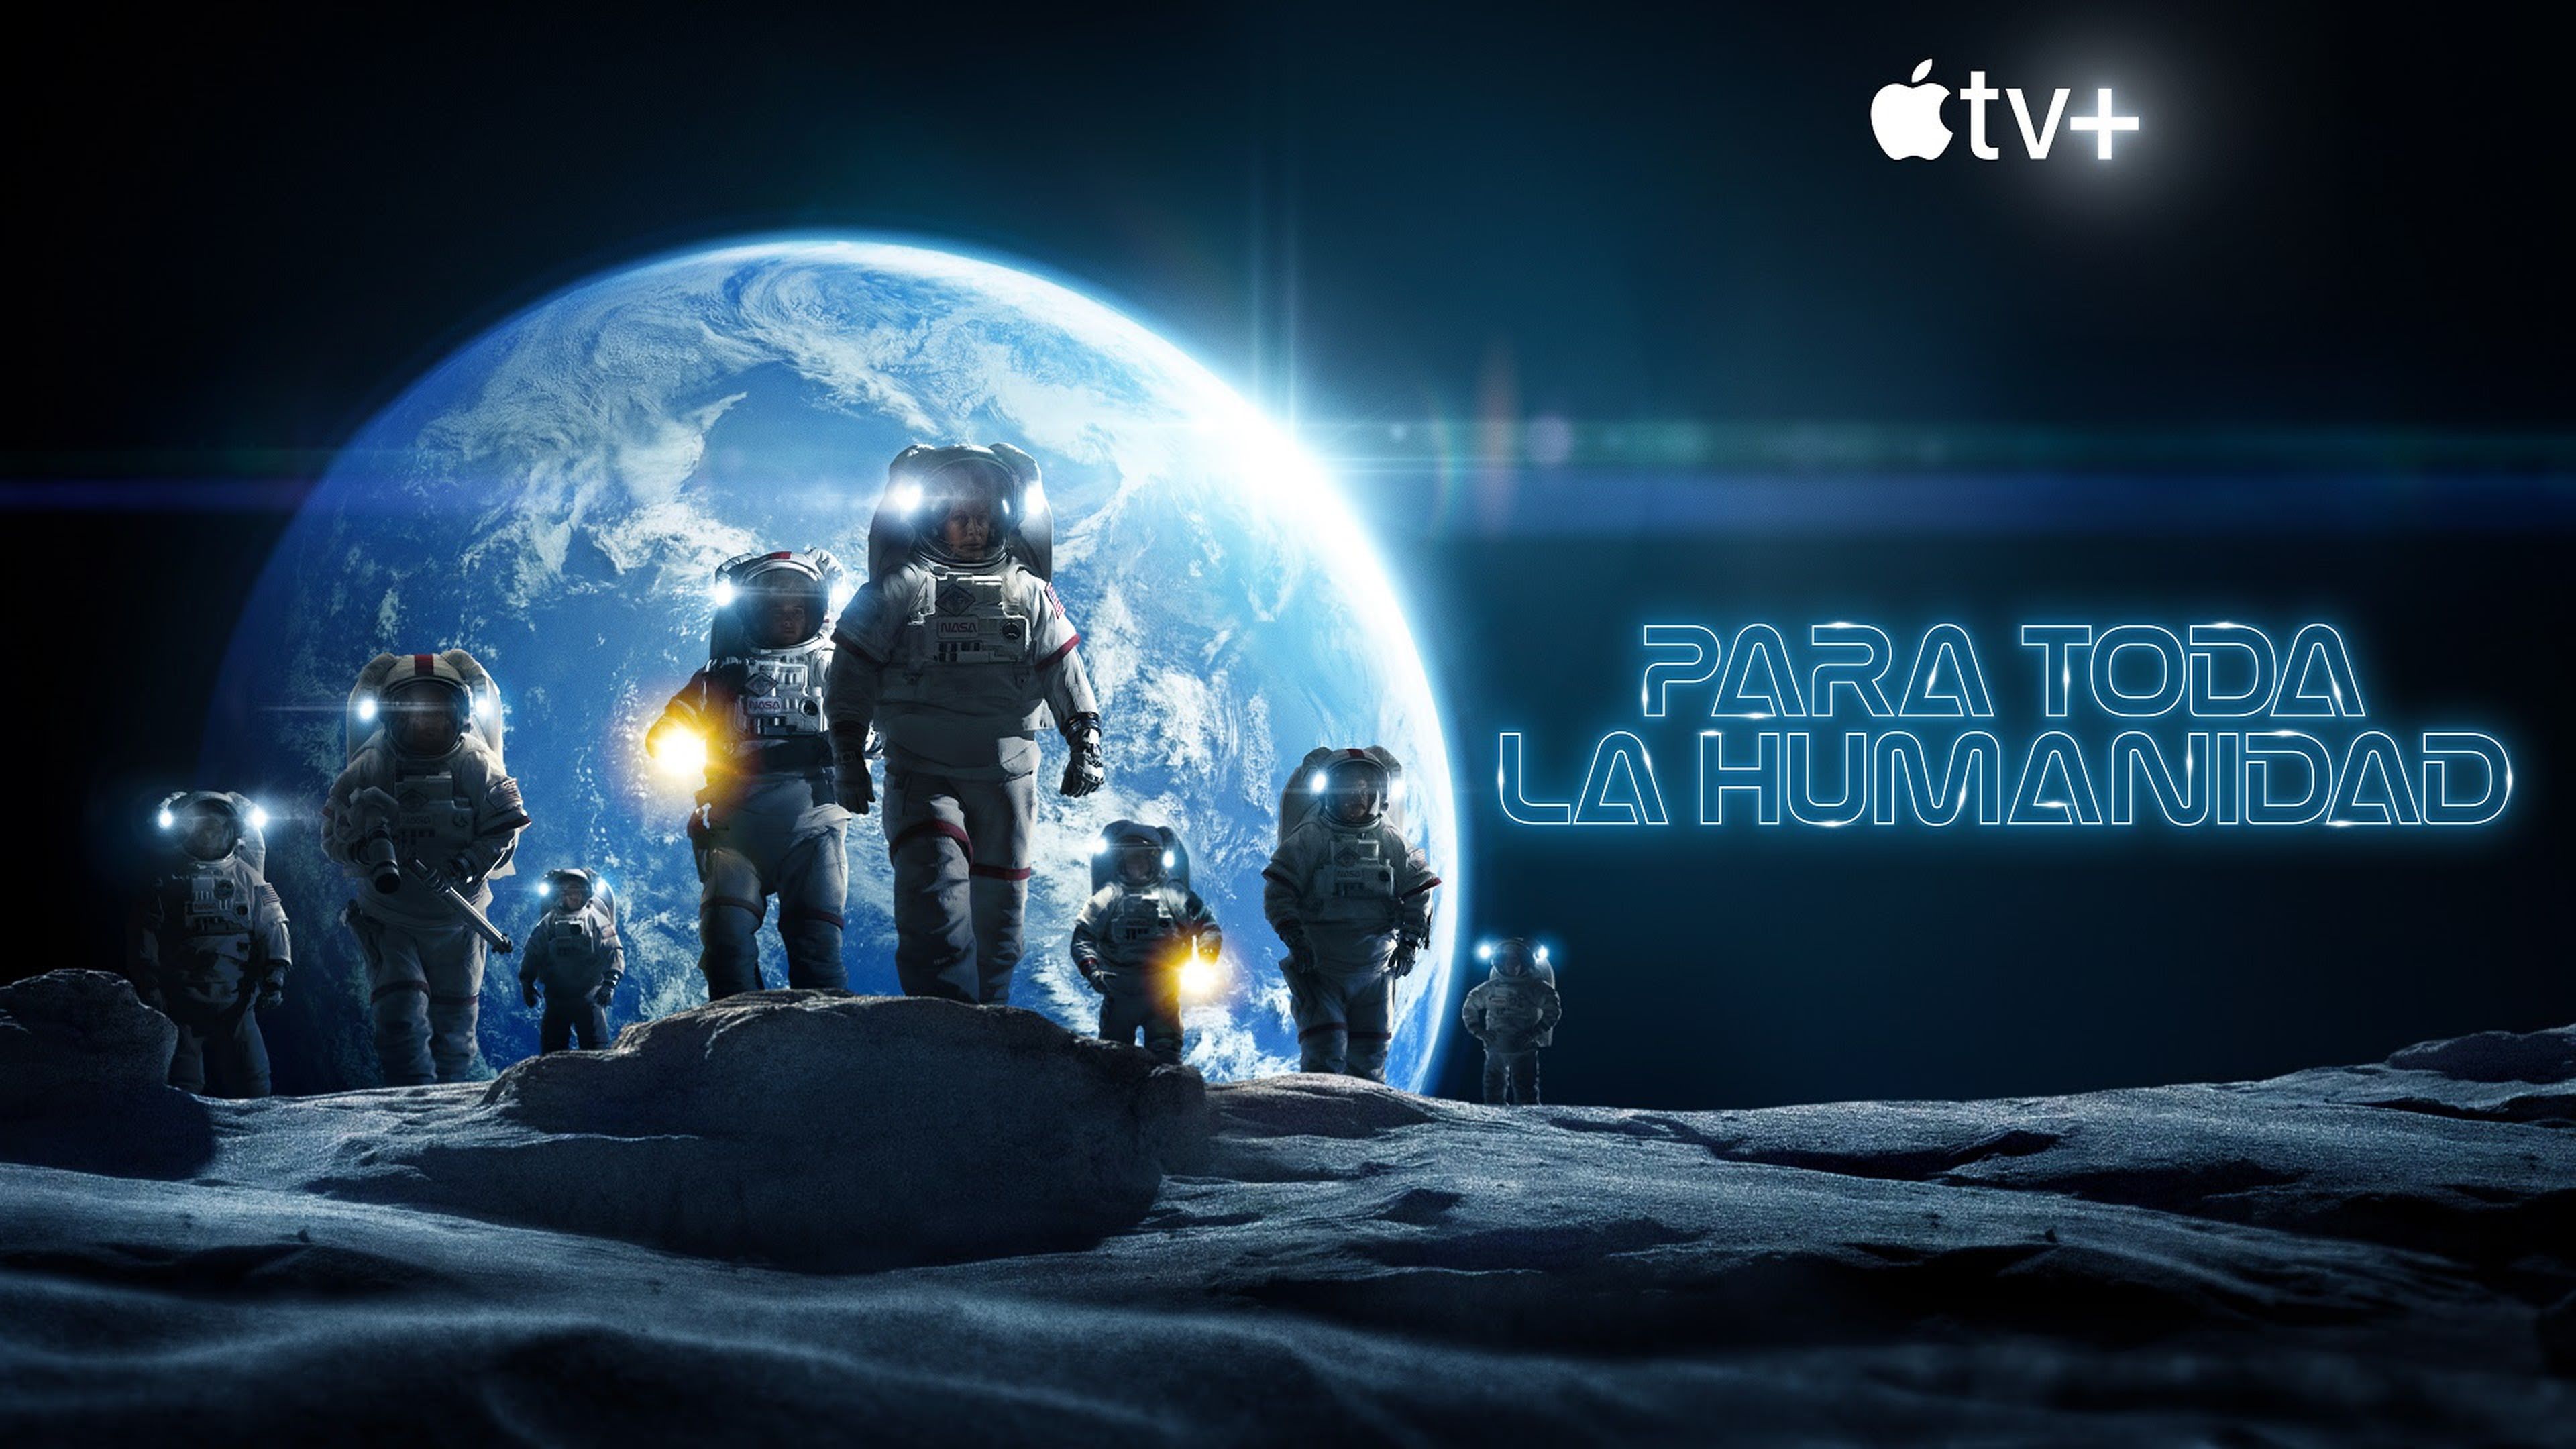 Apple TV+ te ofrece gratis una de las mejores series de ciencia ficción de la actualidad